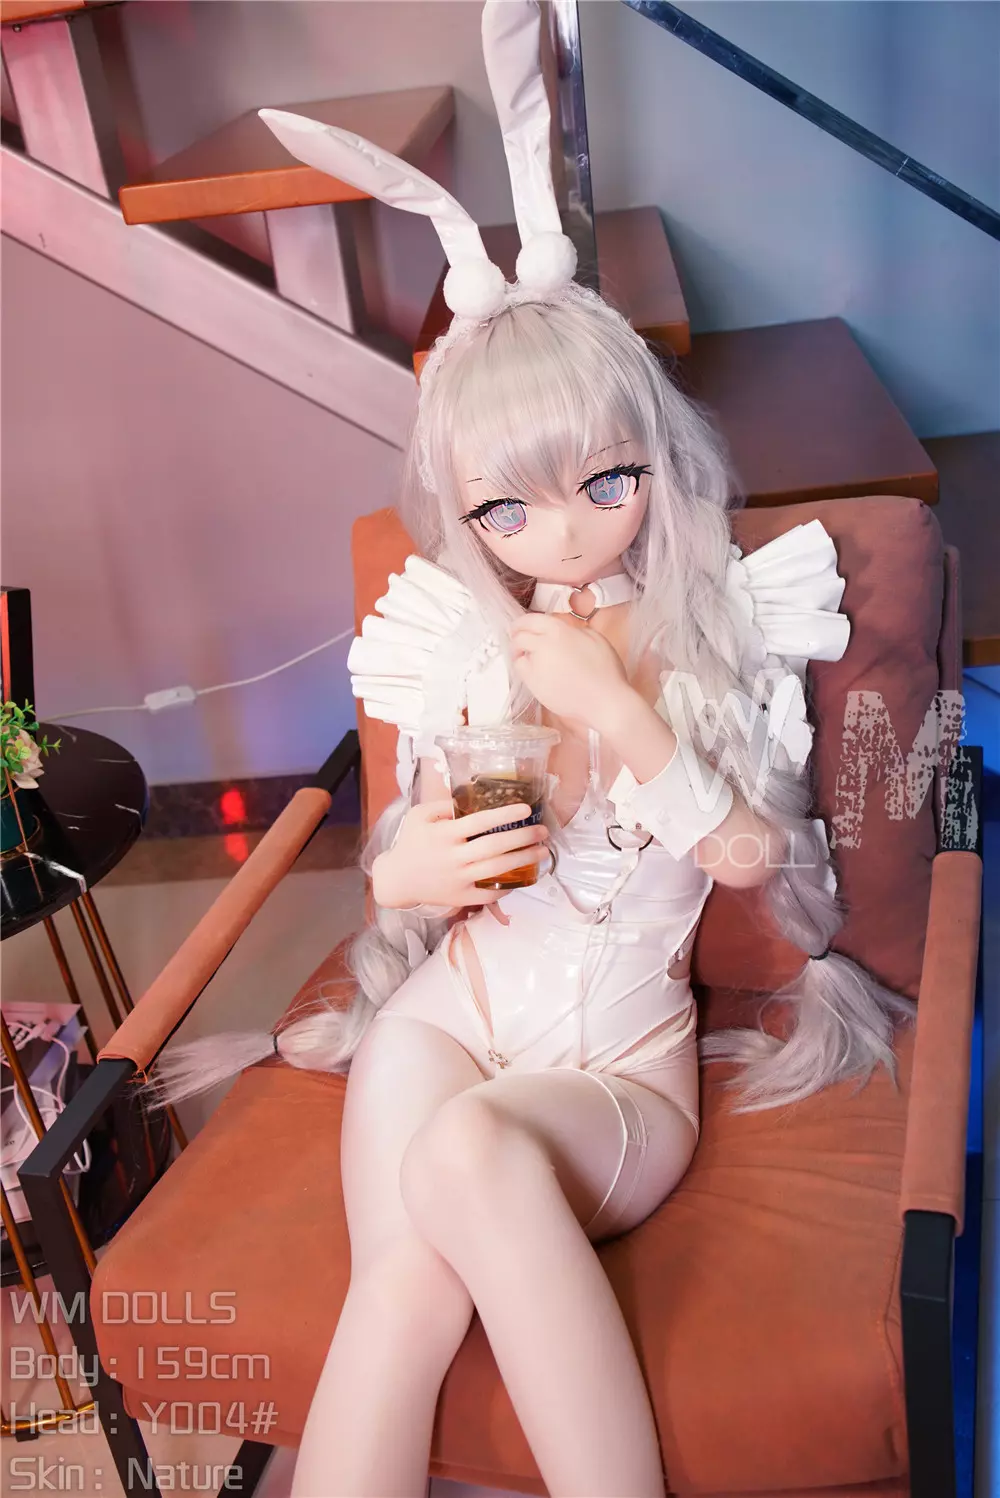 WM S-TPE 159cm Anime Sex Doll with PVC head#Y004